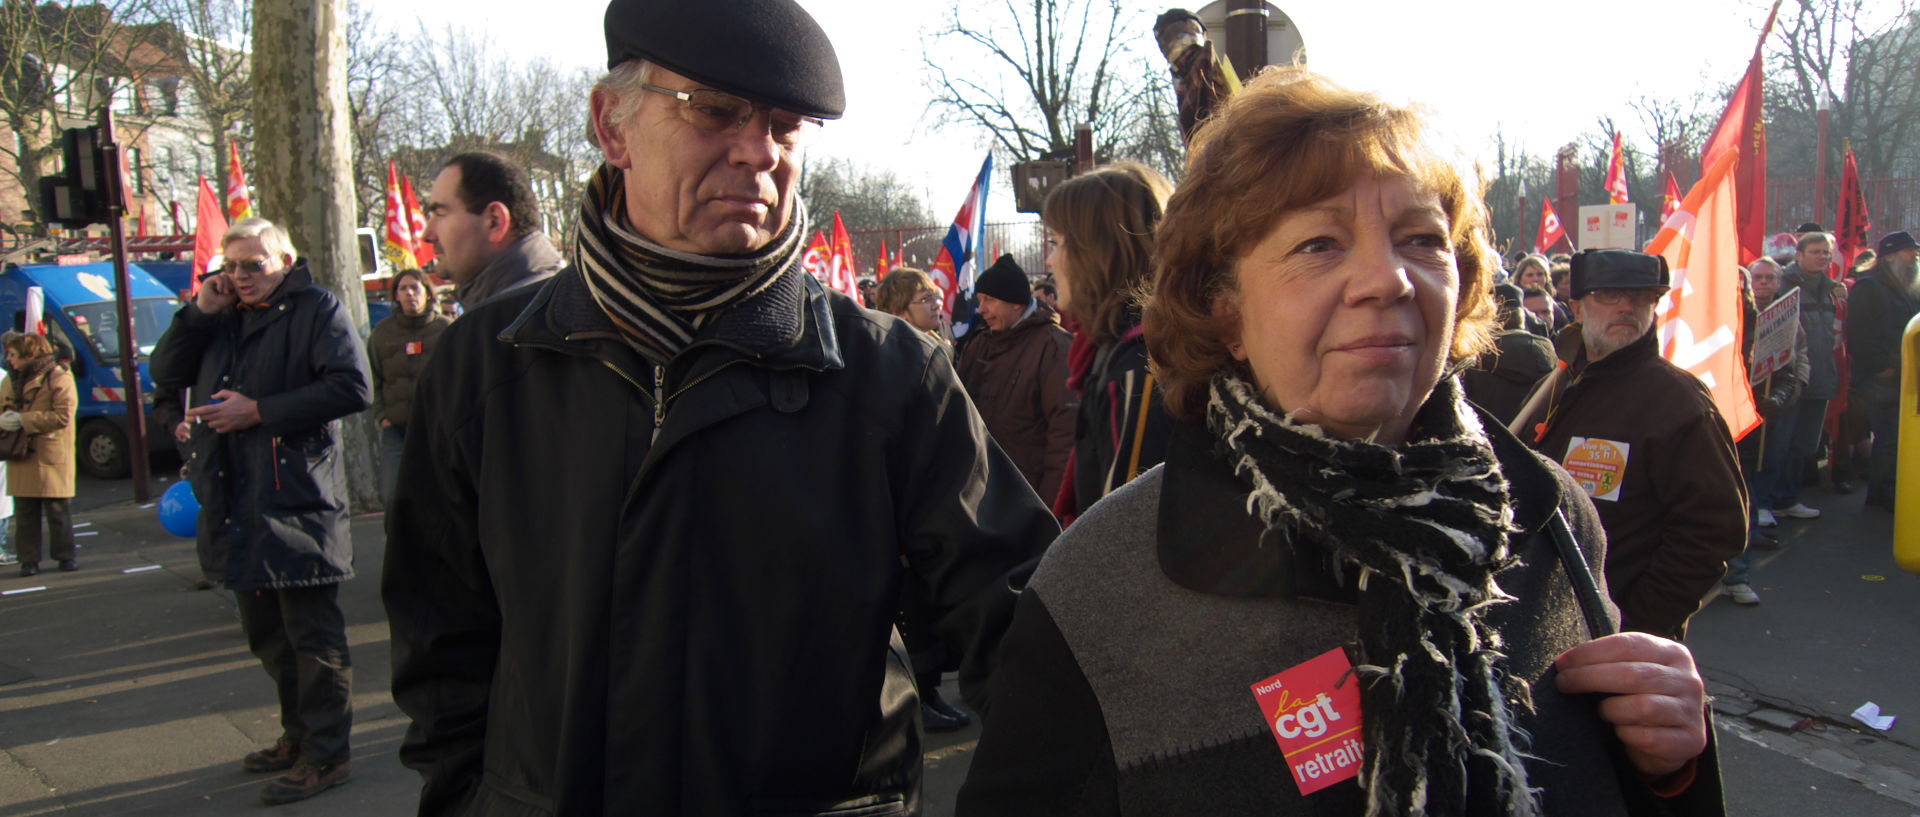 Jeudi 29 janvier 2009, 15:30, manifestation, à Lille.